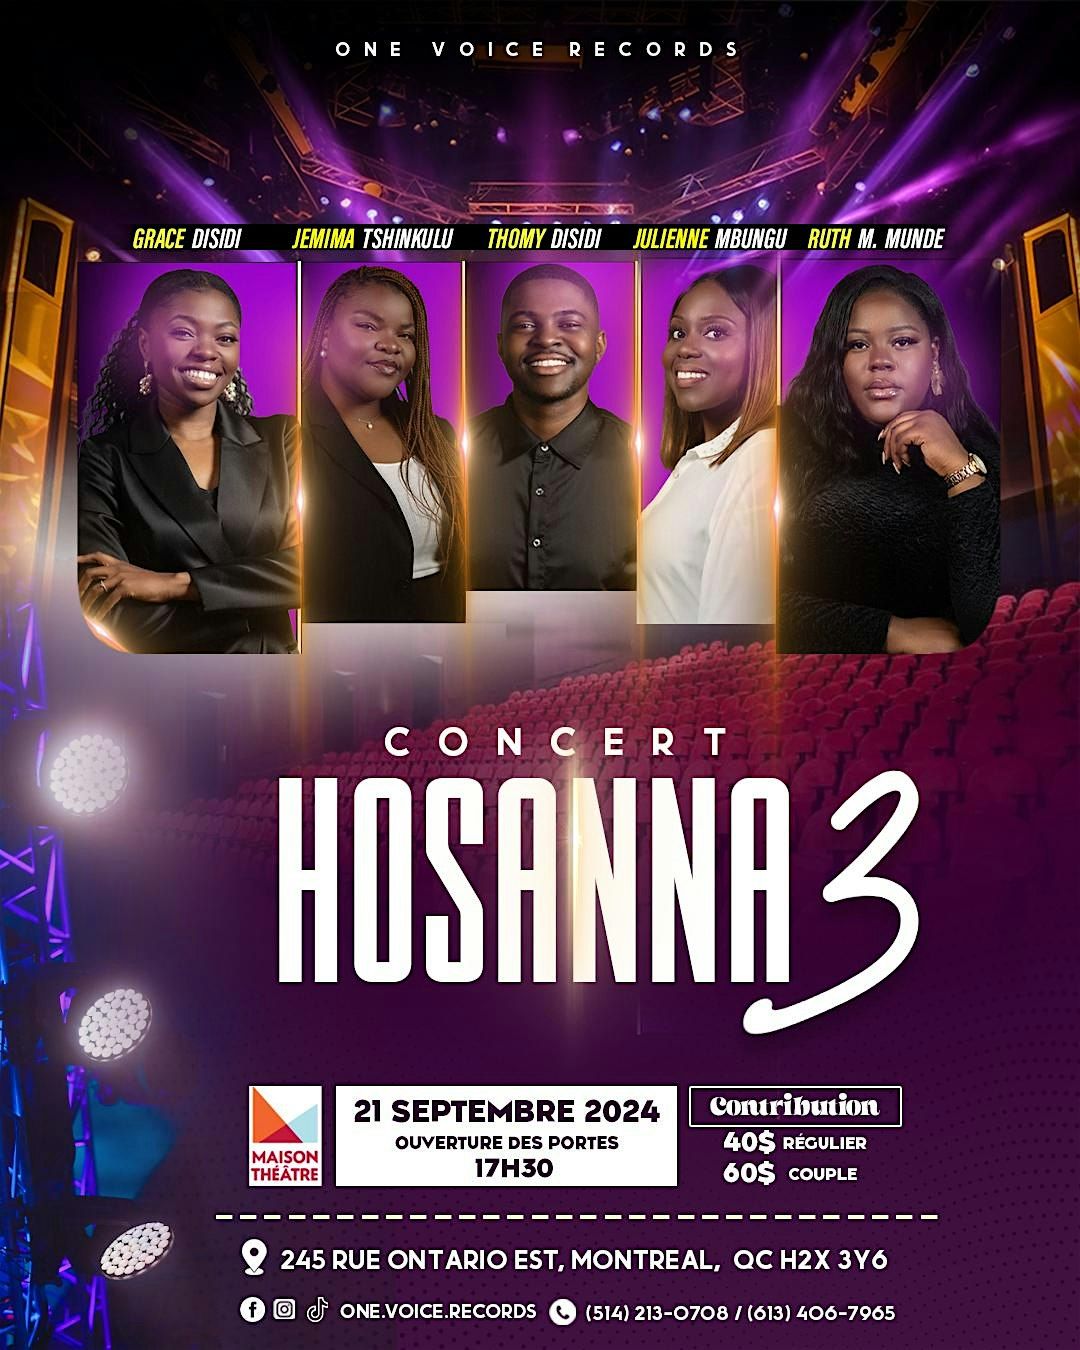 Concert Hosanna 3